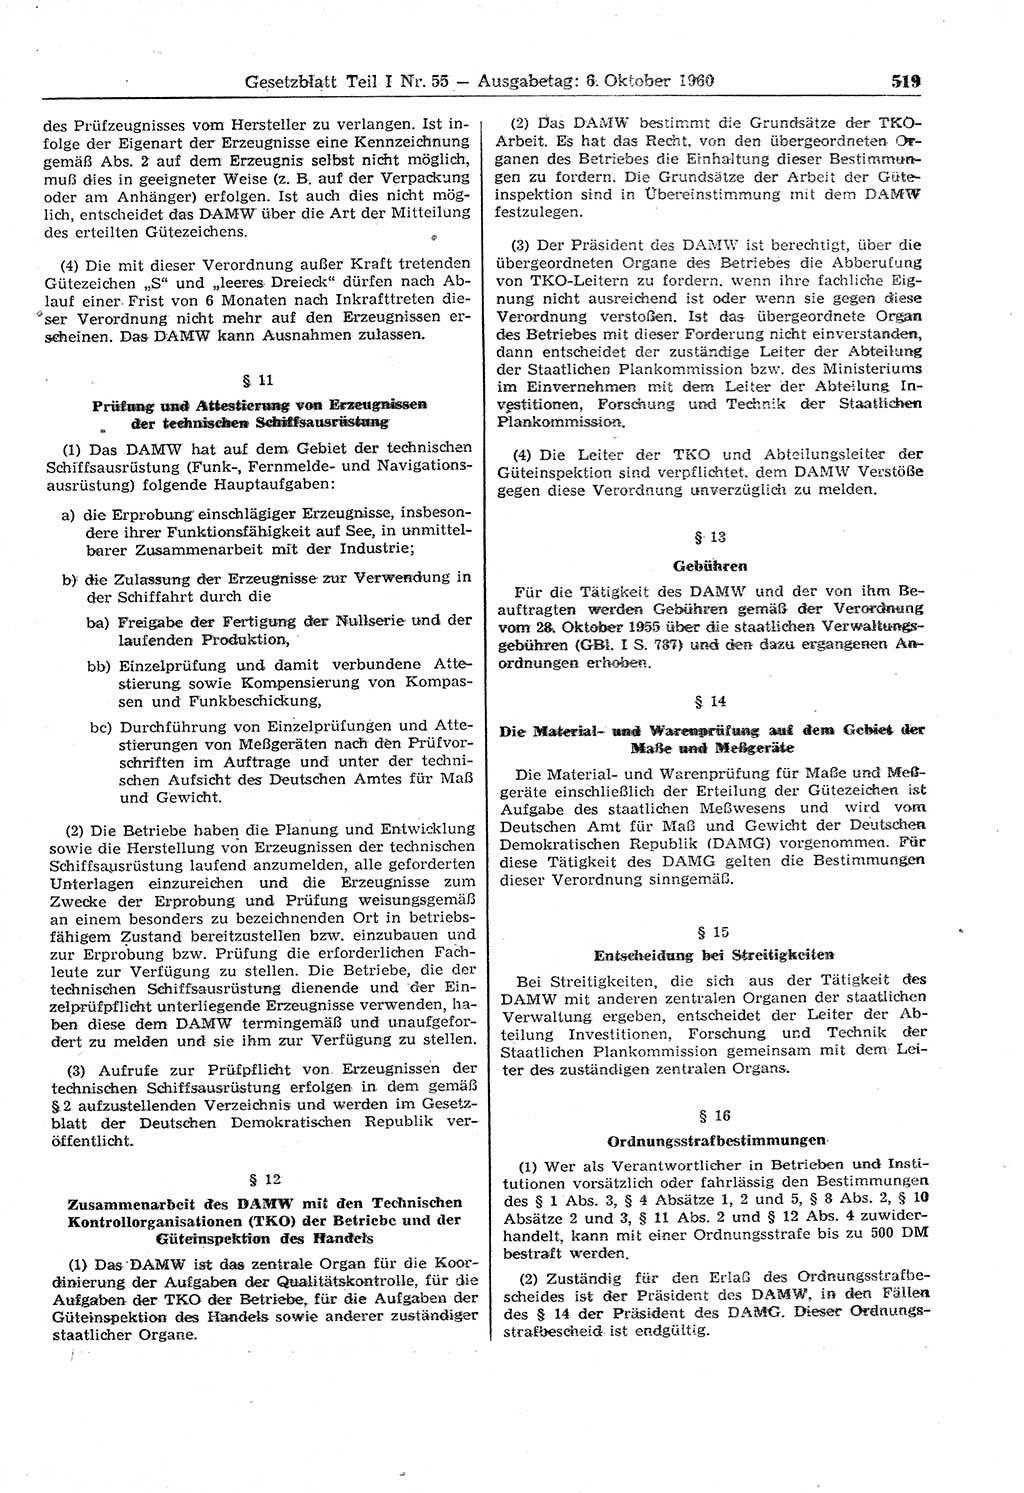 Gesetzblatt (GBl.) der Deutschen Demokratischen Republik (DDR) Teil Ⅰ 1960, Seite 519 (GBl. DDR Ⅰ 1960, S. 519)